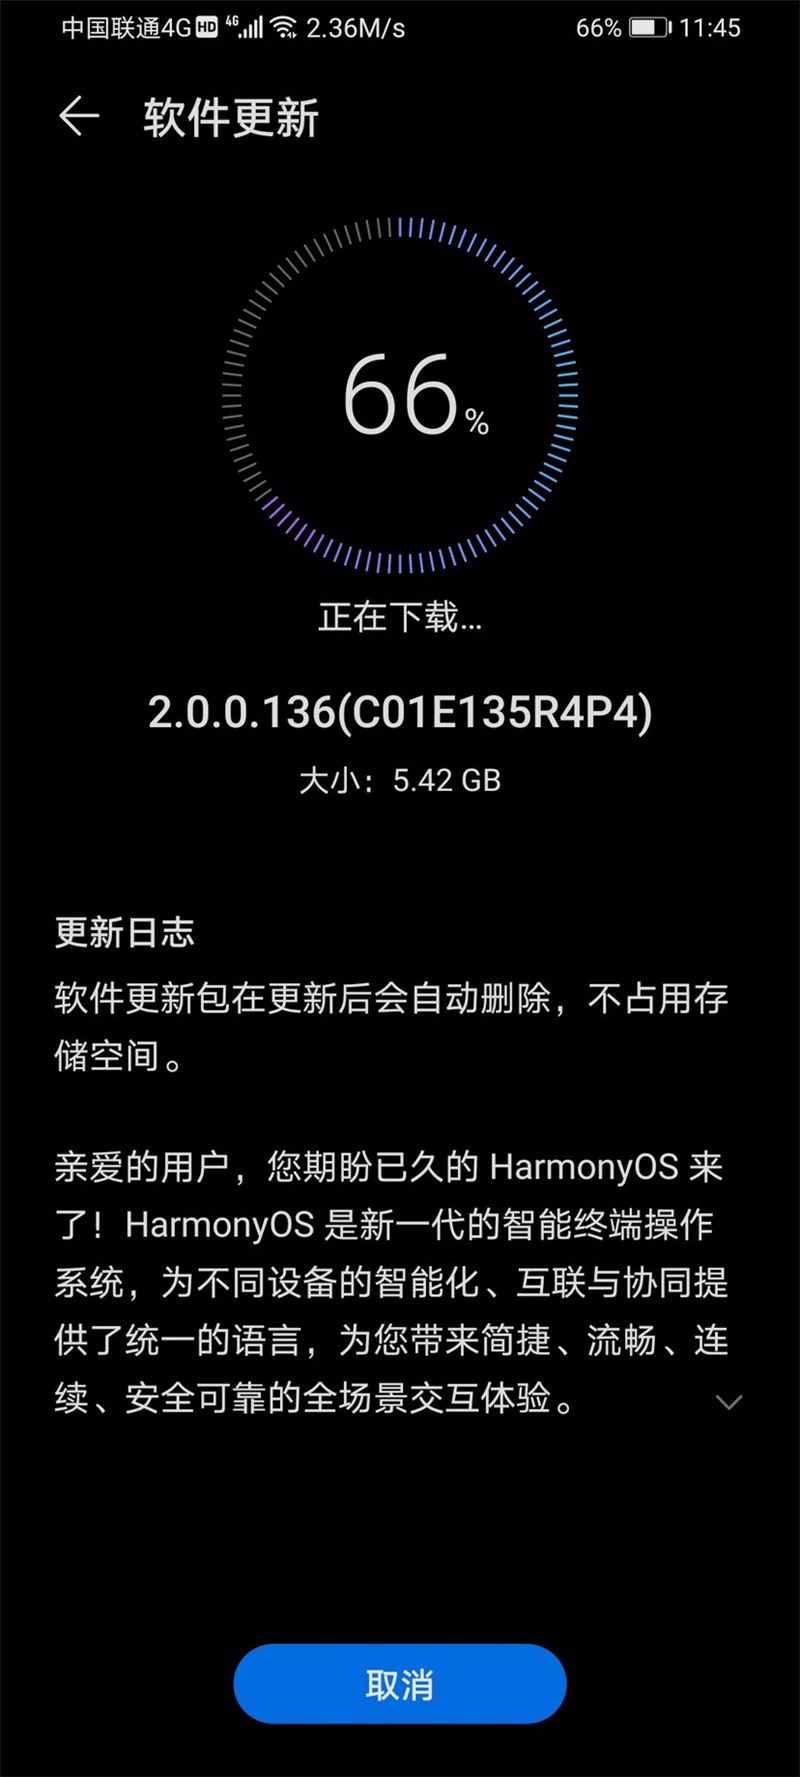 HarmonyOS 2.0.0.136 update